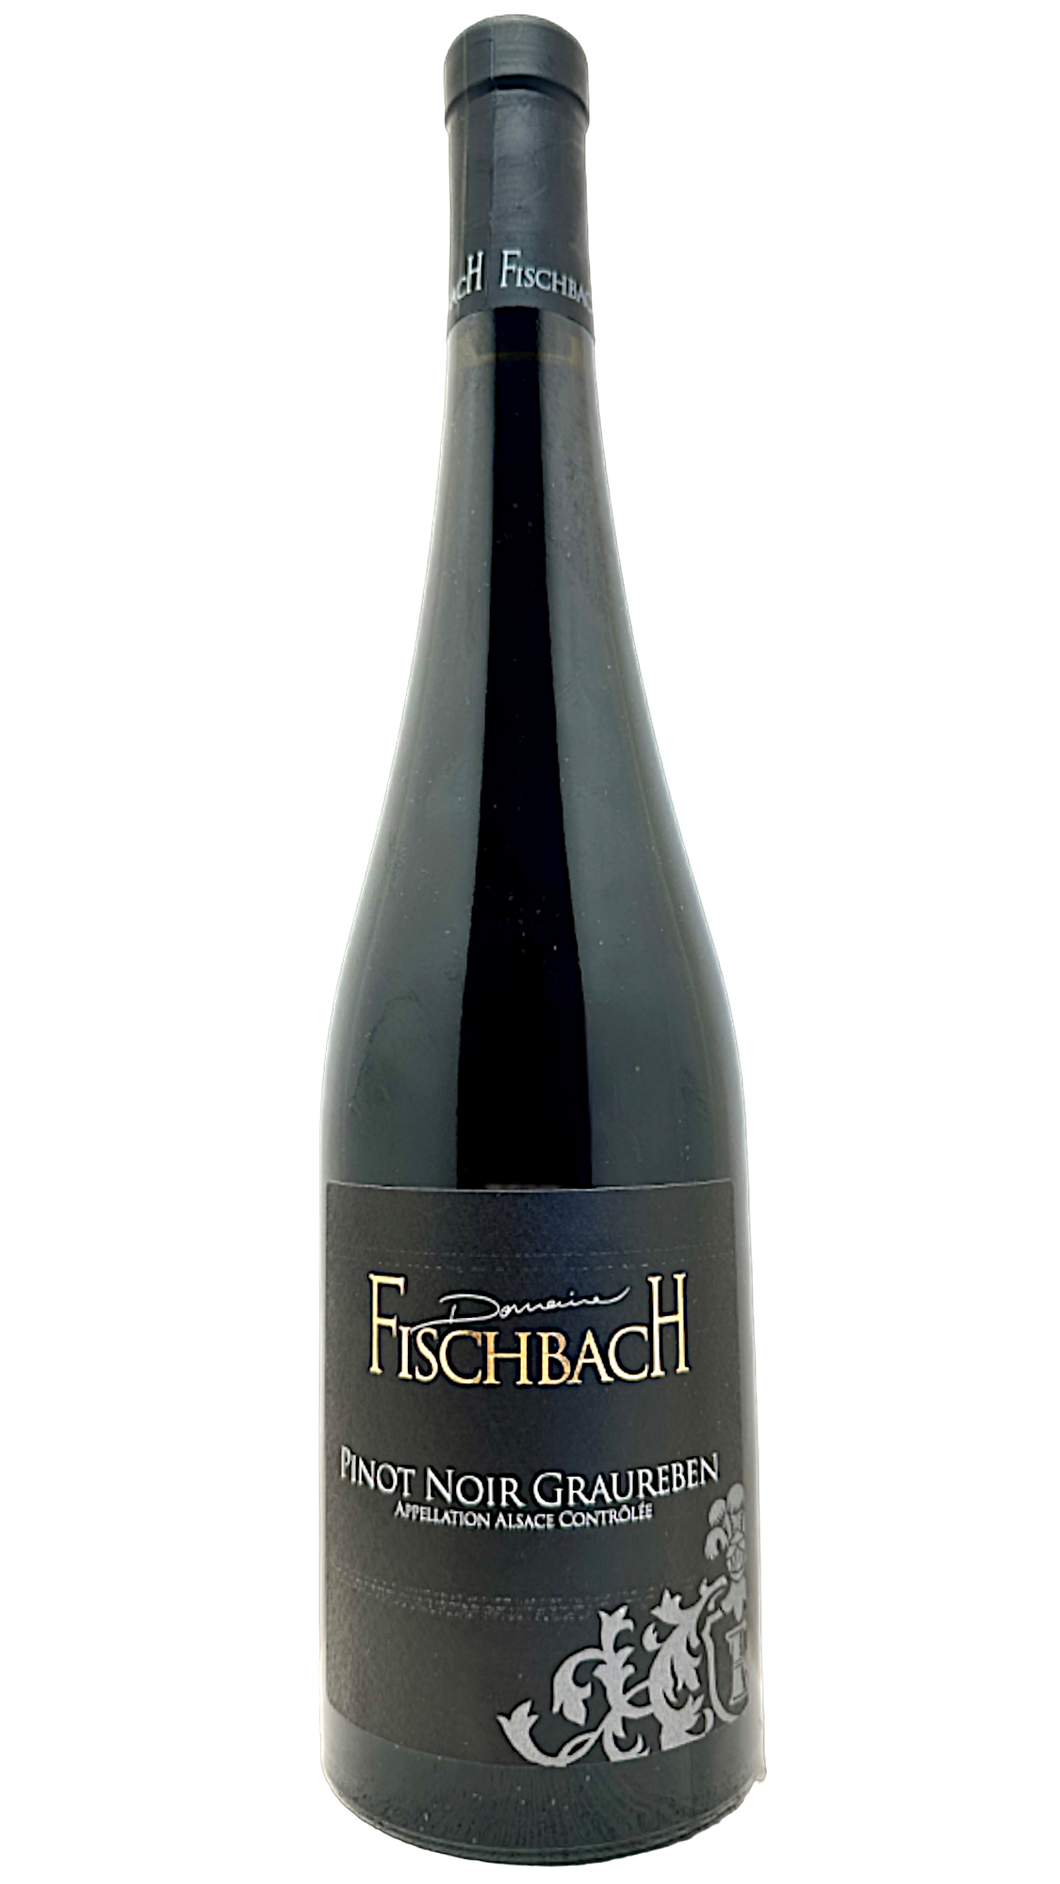 Pinot noir Graureben Domaine Fischbach 